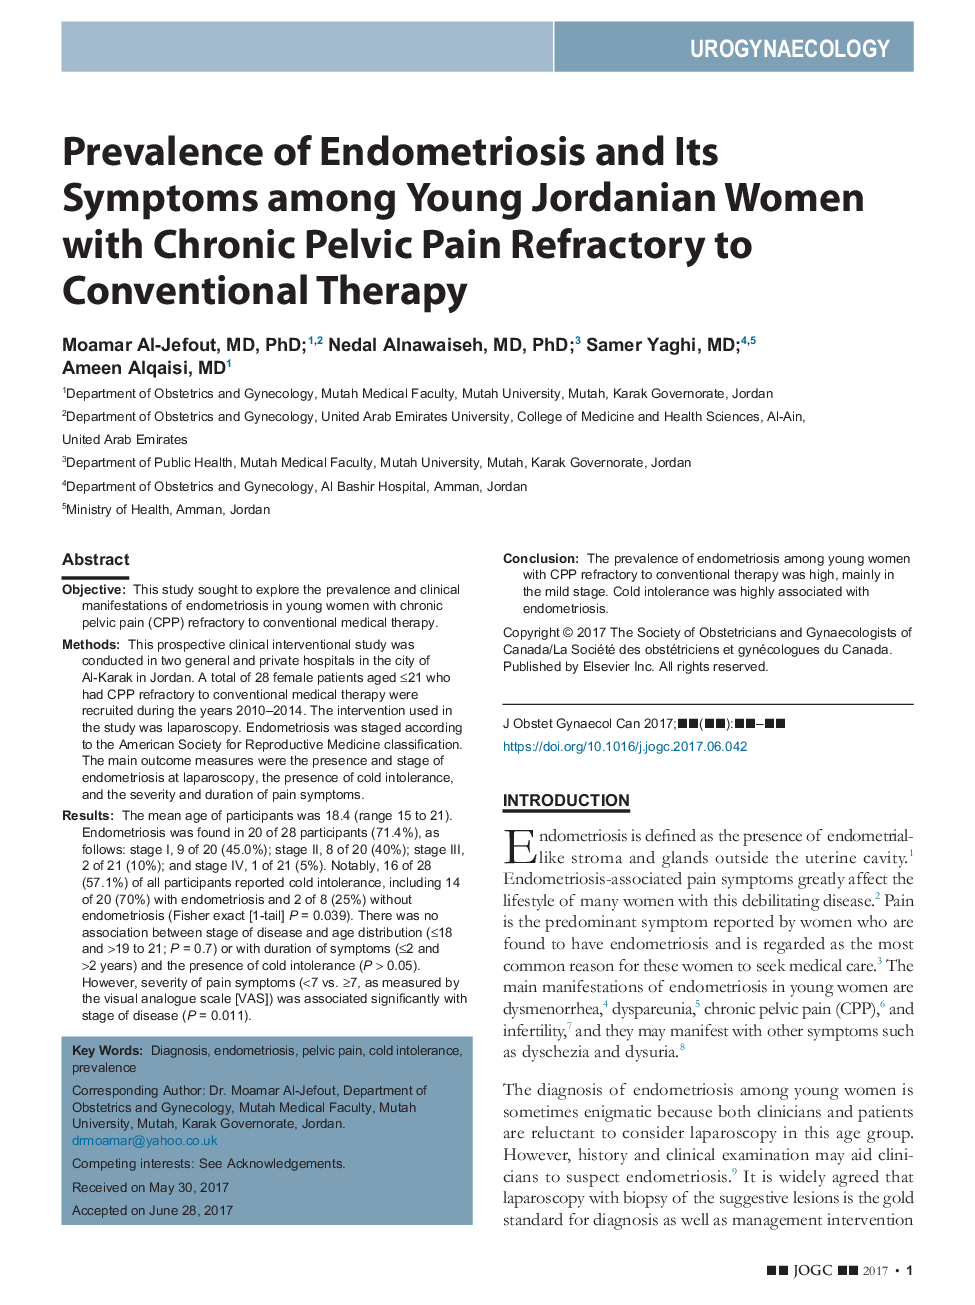 شیوع آندومتریوز و علایم آن در زنان جوان اردن با درد مزمن لگنی مقاوم به درمان متعارف 